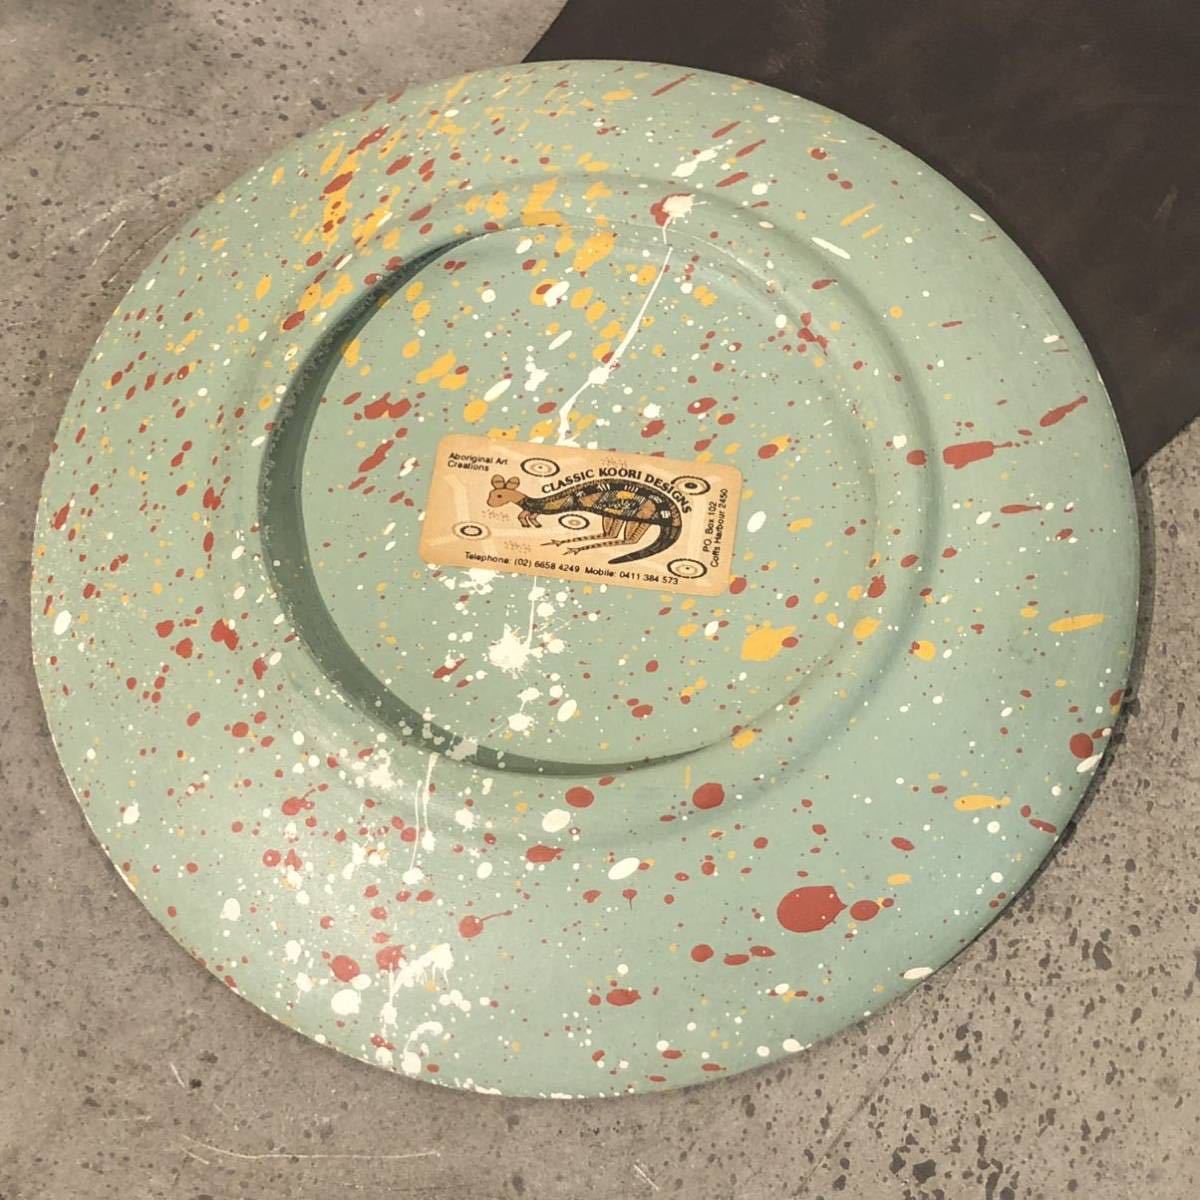 【即決/送料無料】 classic koori designs アボリジニアートプレート 陶磁器製飾り皿 絵皿 一点物 ハンドメイド 海外土産 インテリア